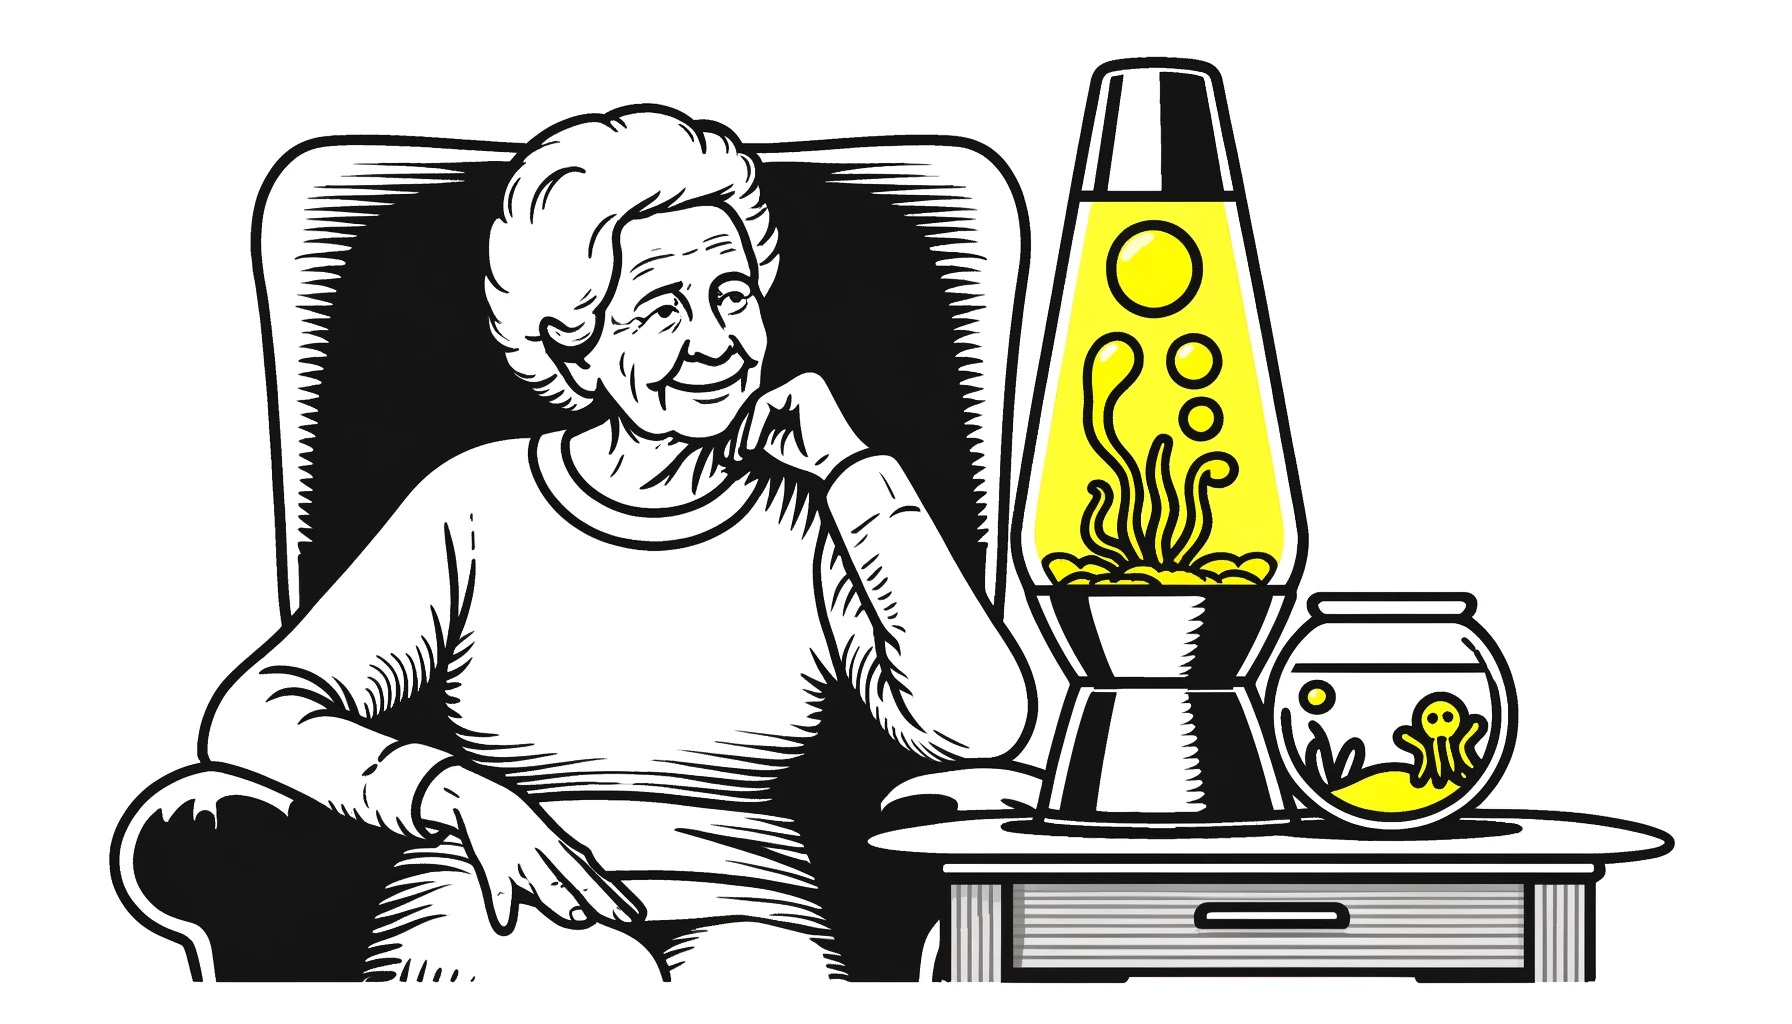 Eine ältere Frau sitzt bequem in einem Pflegeheim, fasziniert von einer Lavalampe mit gelbem Inhalt neben ihr. Im Hintergrund ist ein Fischglas sichtbar mit kleinen gelben Oktopussen darin. Ihr Ausdruck ist glücklich und gebannt von dem, was sie sieht